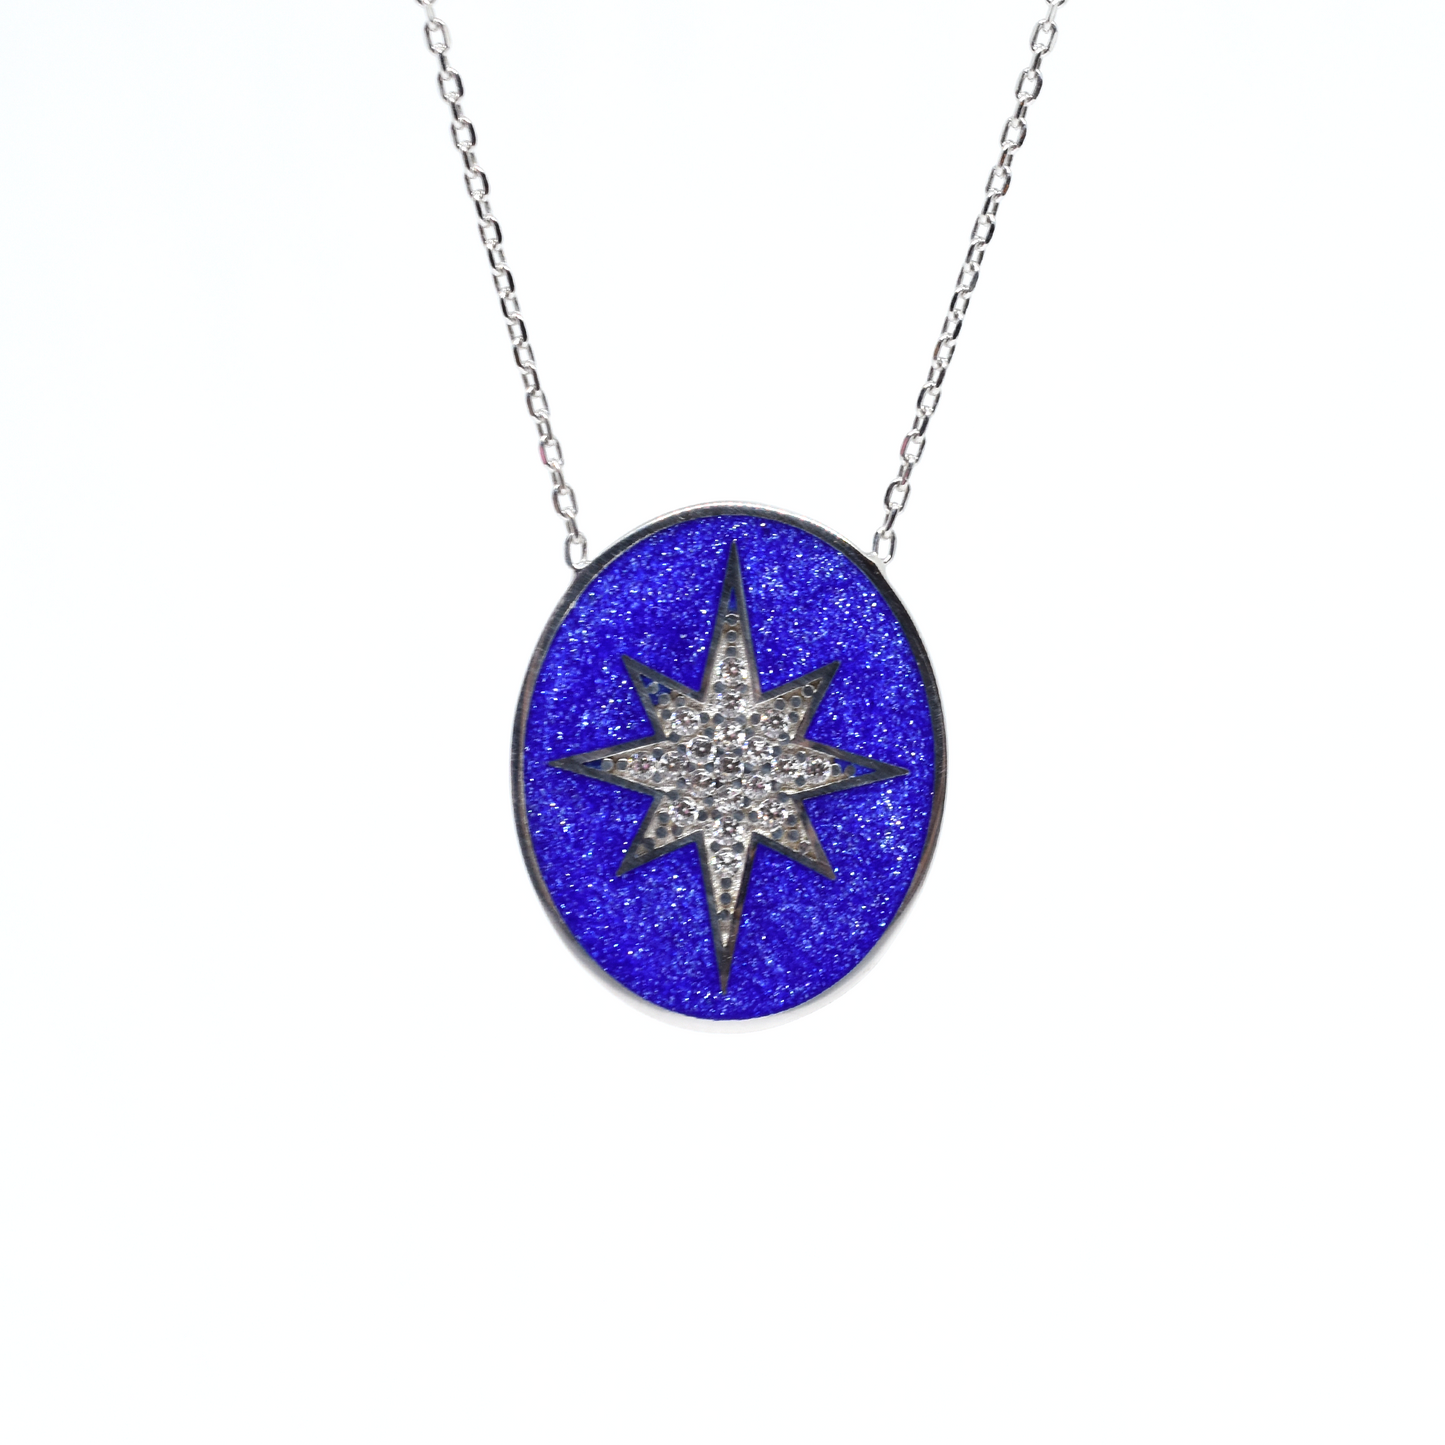 Aqua North Star Necklace